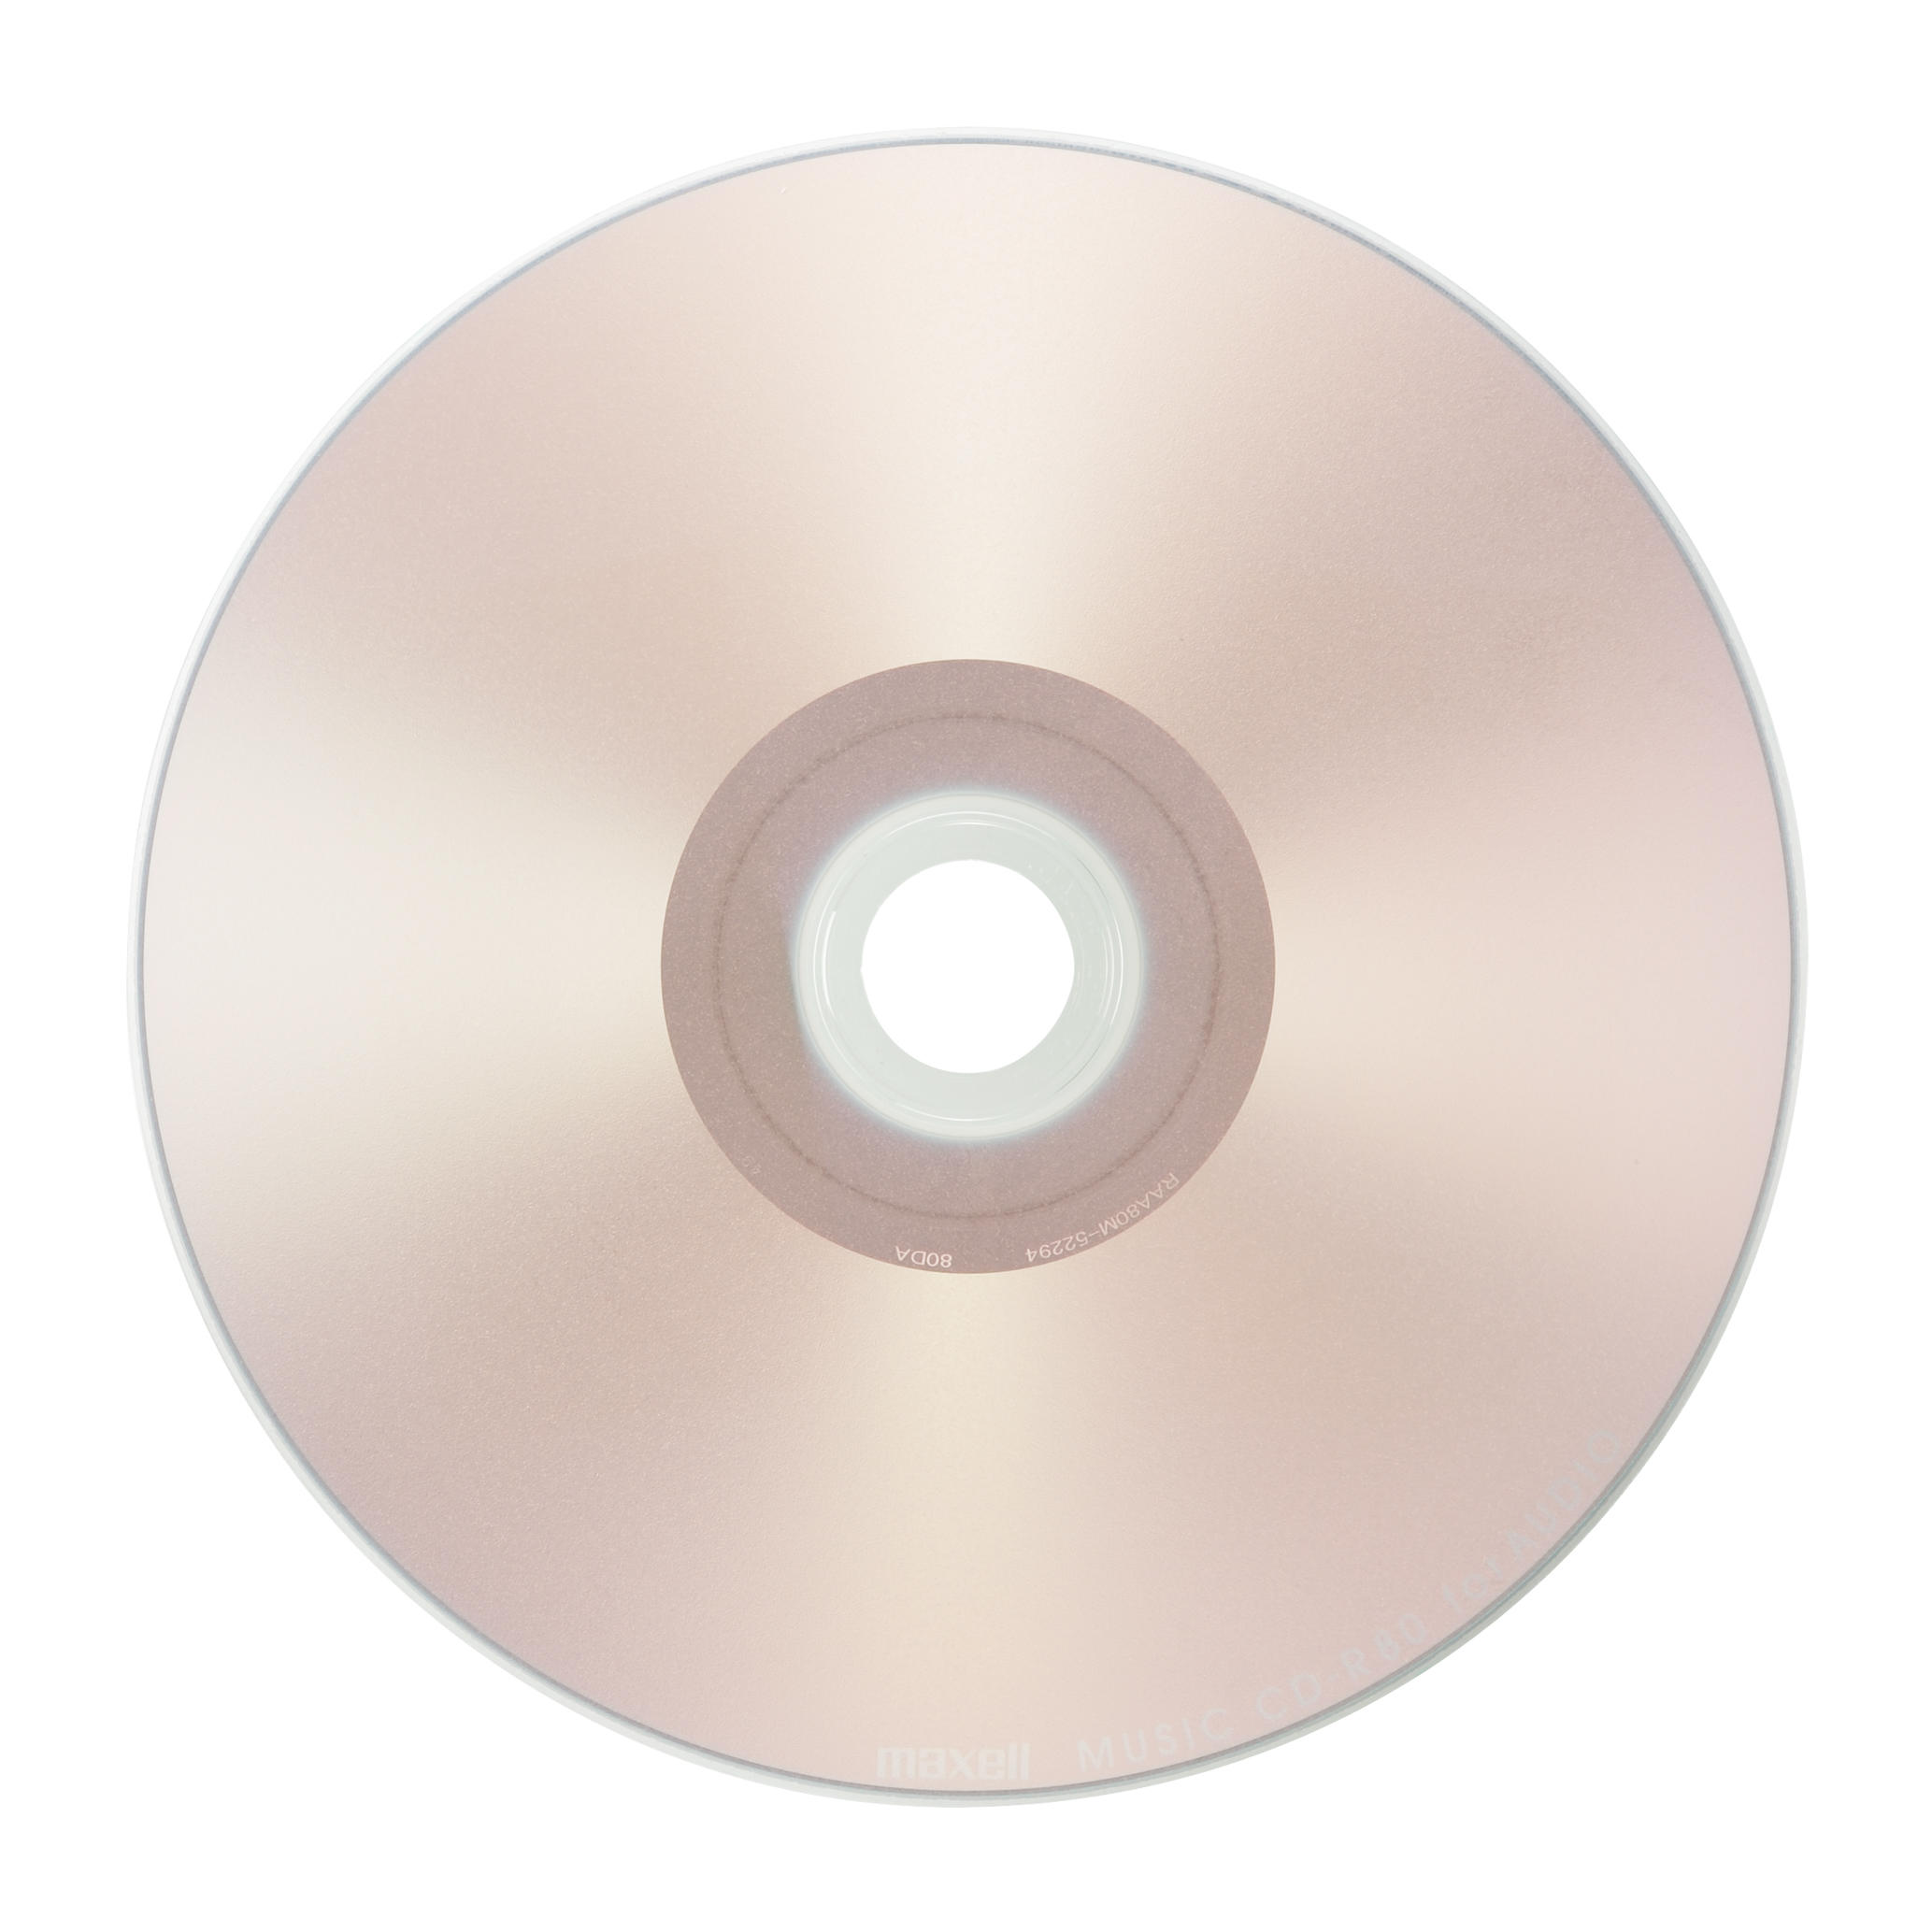 818円 は自分にプチご褒美を maxell 音楽用CD-R インクジェットプリンター対応 Sweet Color Mix Series 80分 30枚ス CDRA80